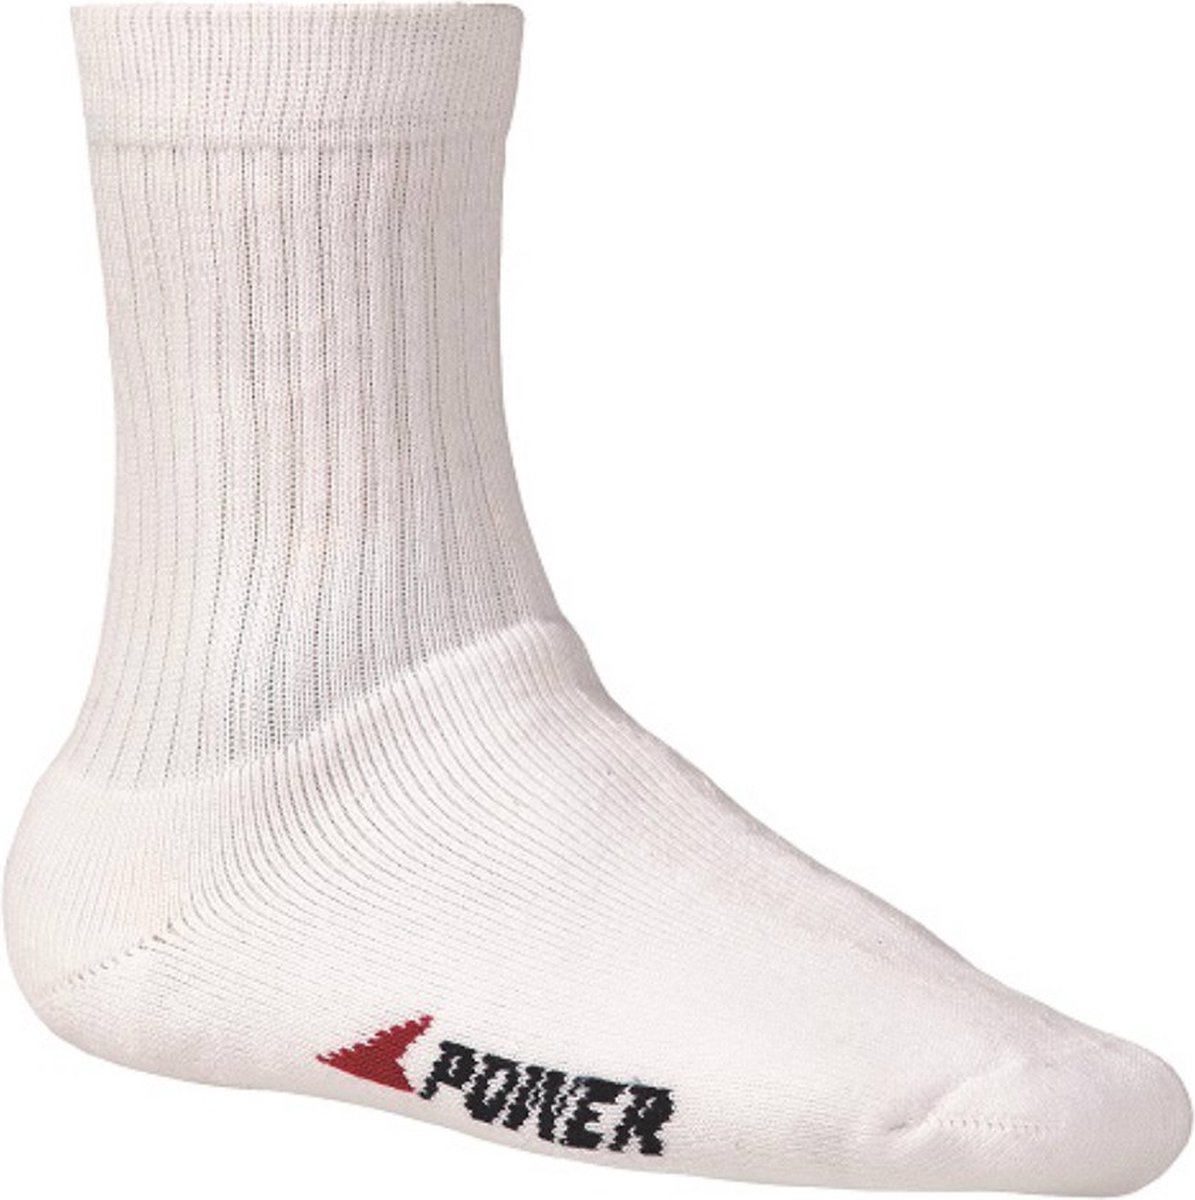 Bata badstof sokken Industrials Power - wit - 39-42